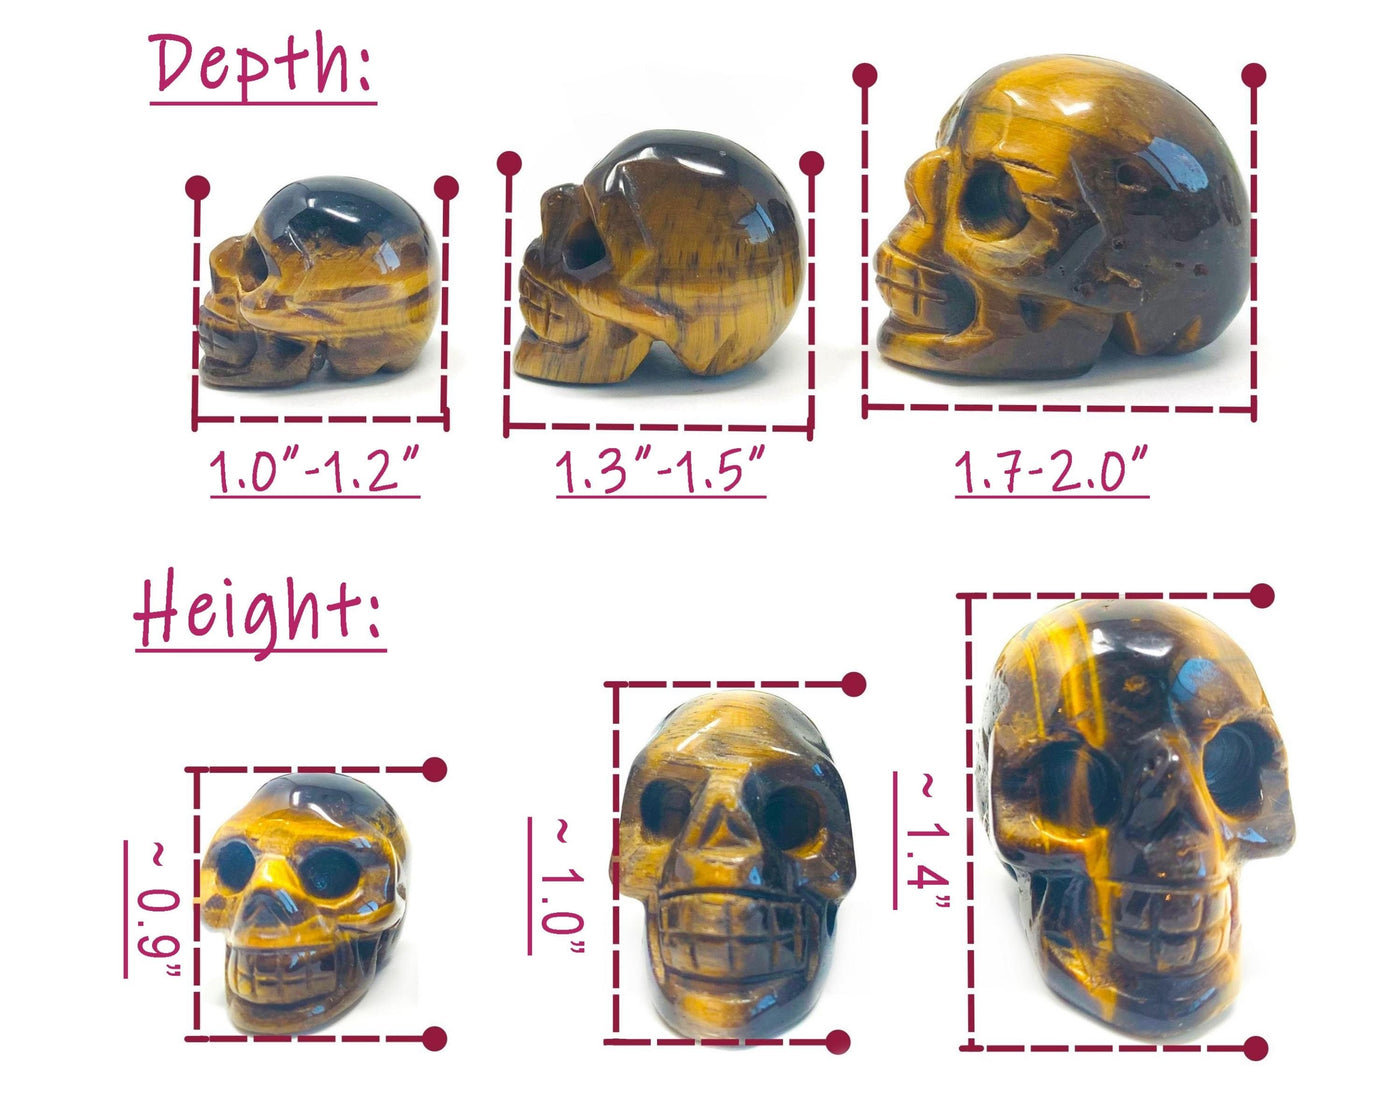 Crystal Skull, Crystal Skulls in 35+ Healing Crystals, Crystal Skull Large, Small Carving Amethyst Skull Obsidian Skull Quartz Crystal Skull